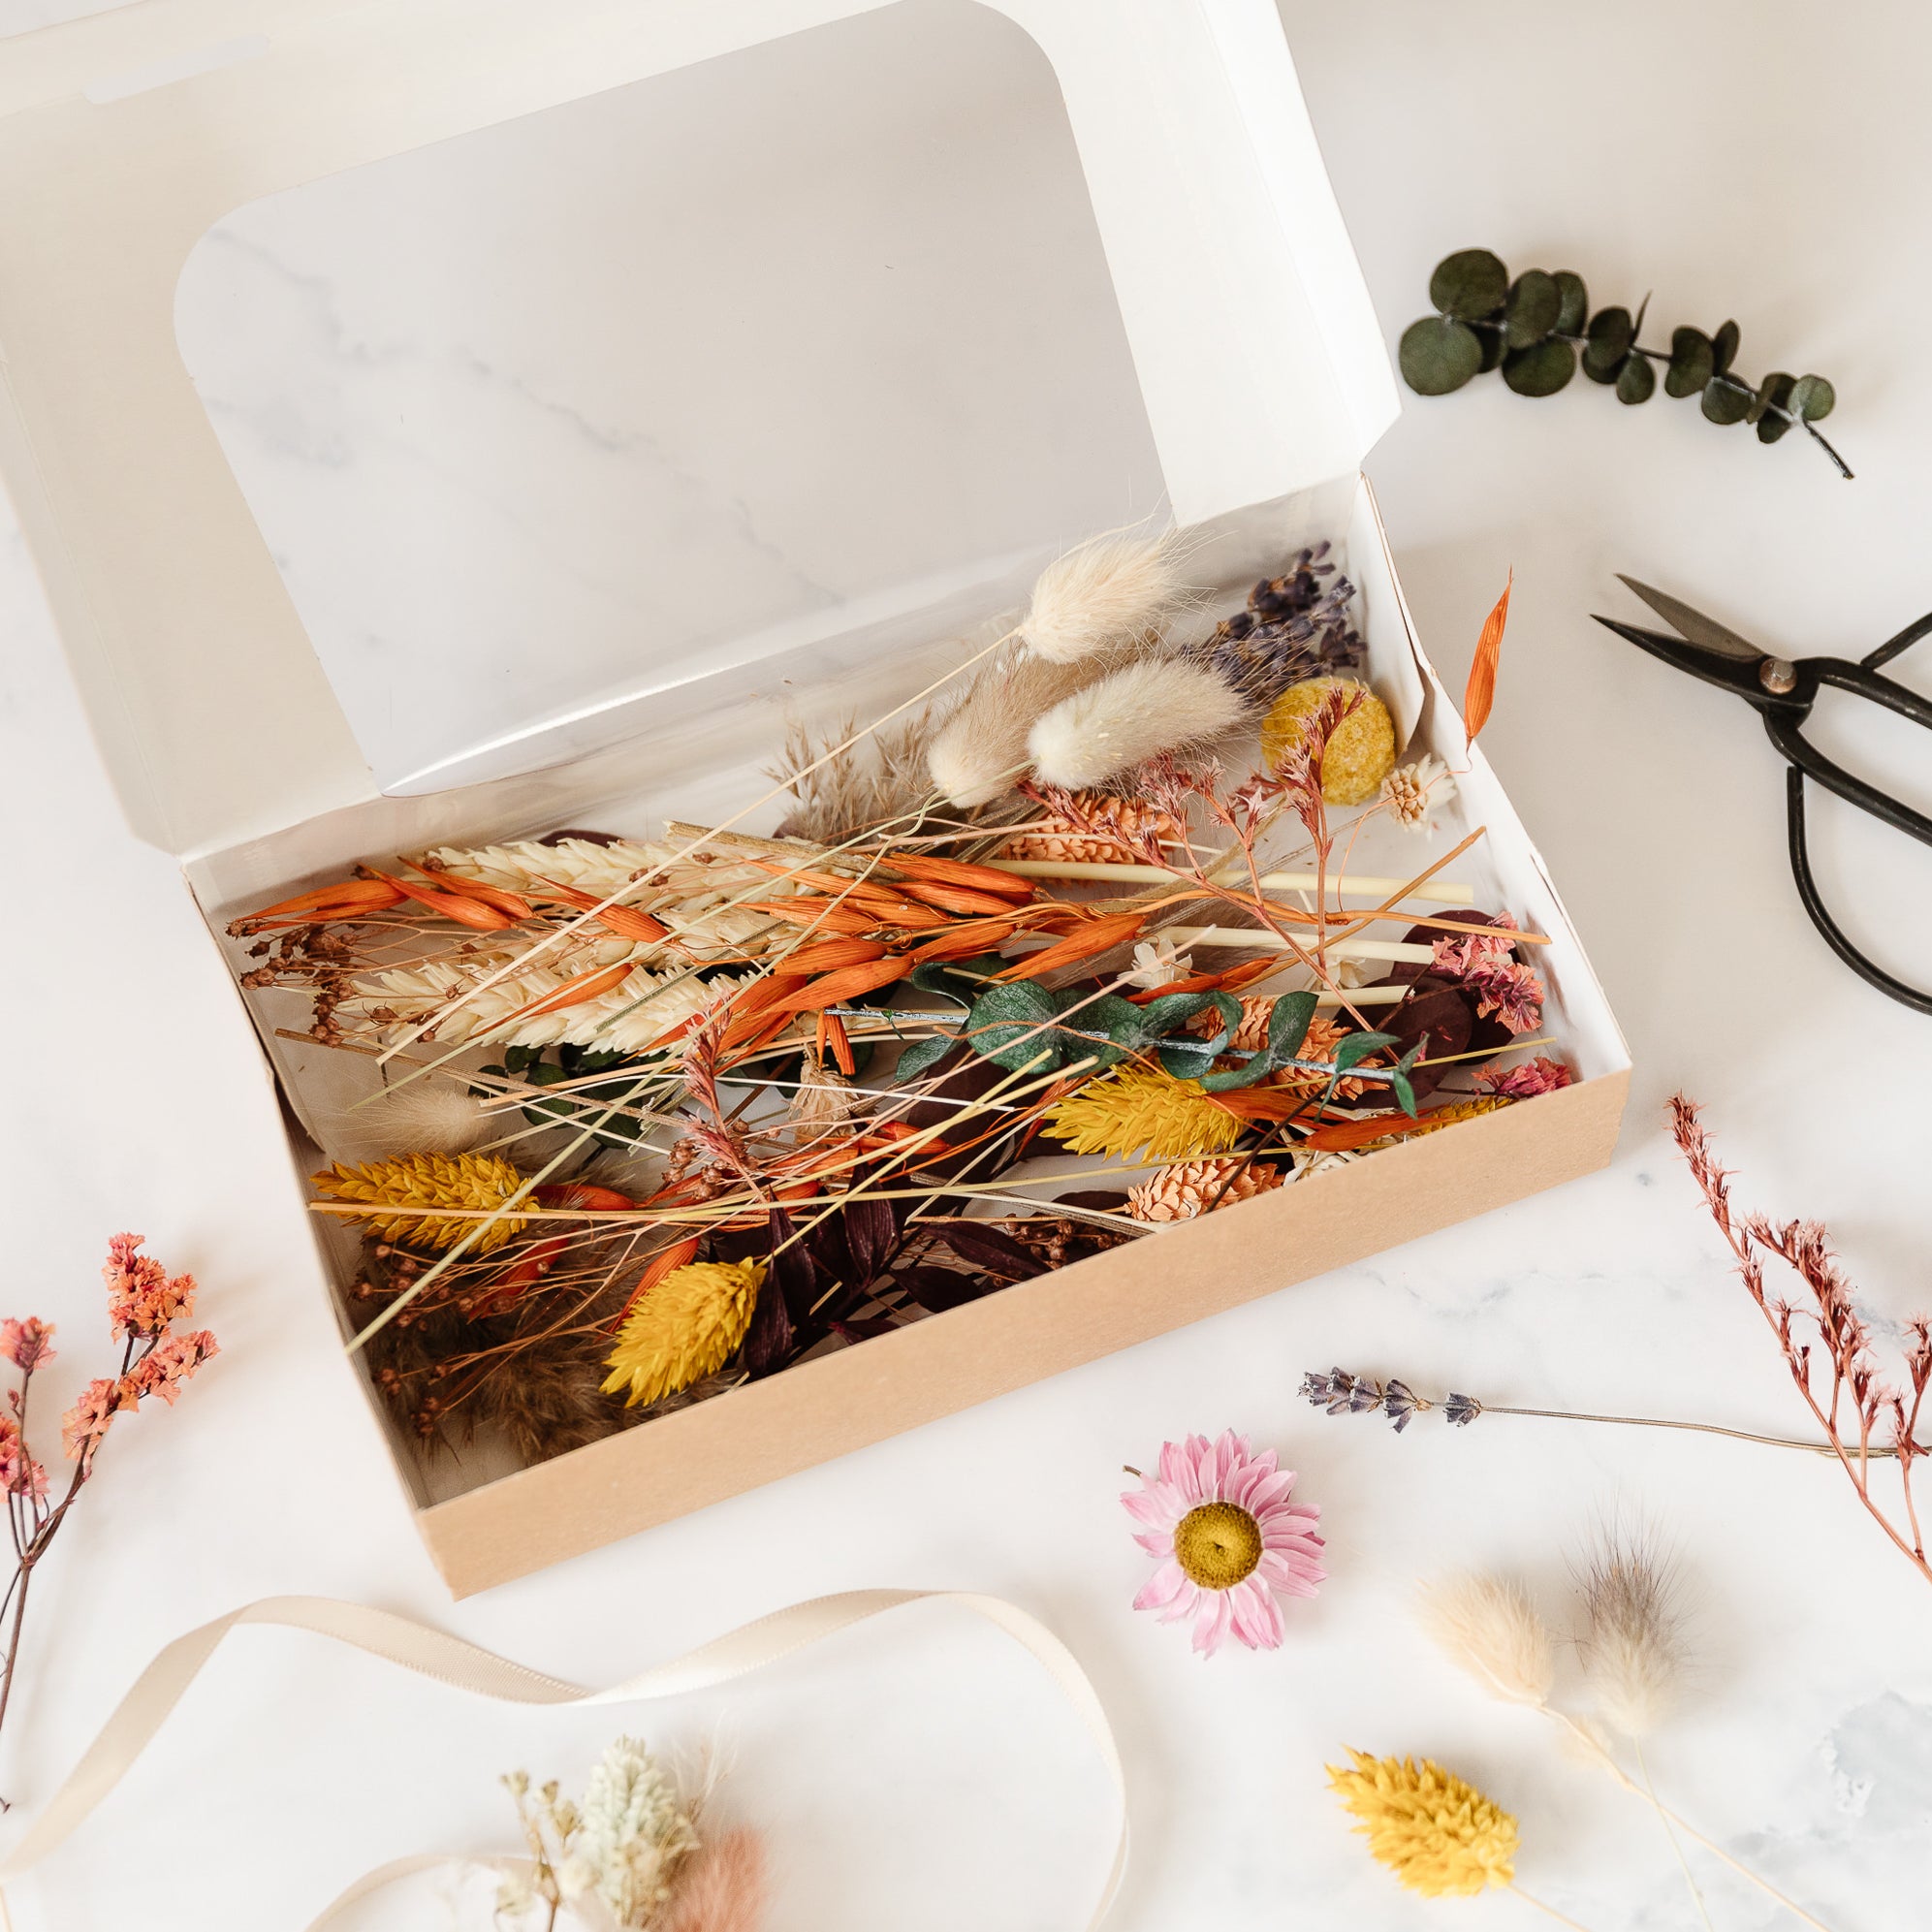 Trockenblumen Mix Box für DIY Projekte wie Karten, Sträußen und mehr